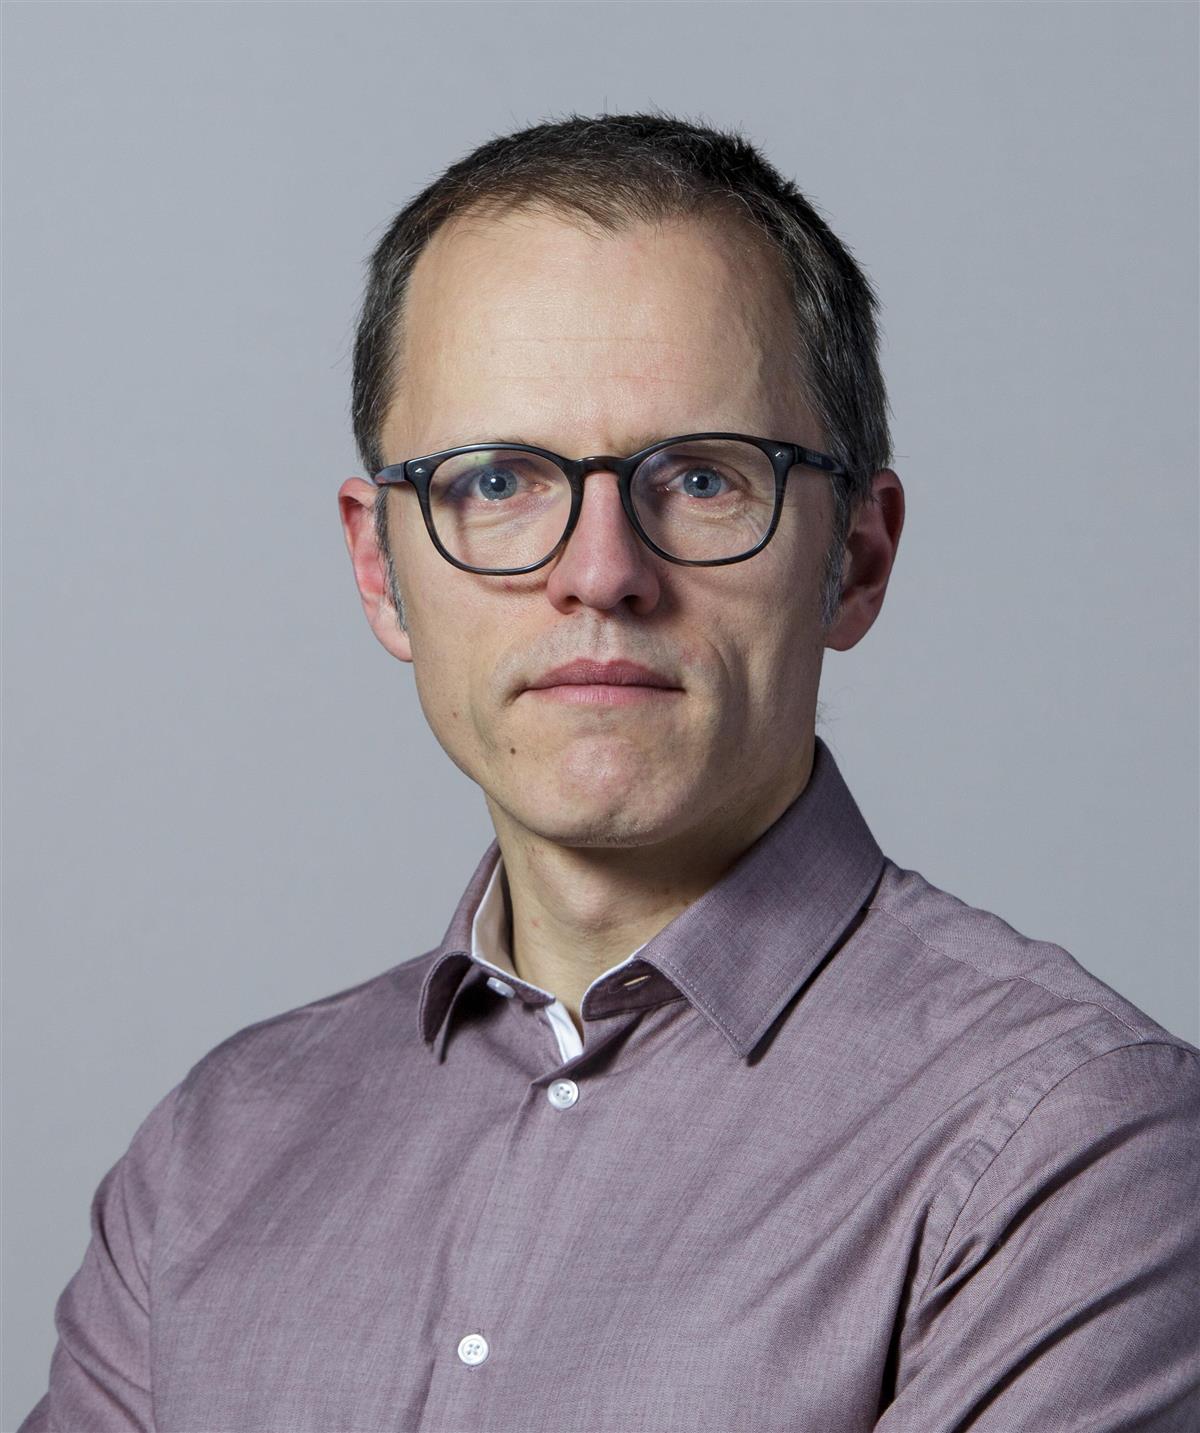 Portrett av mann med briller og grå skjorte - Klikk for stort bilde